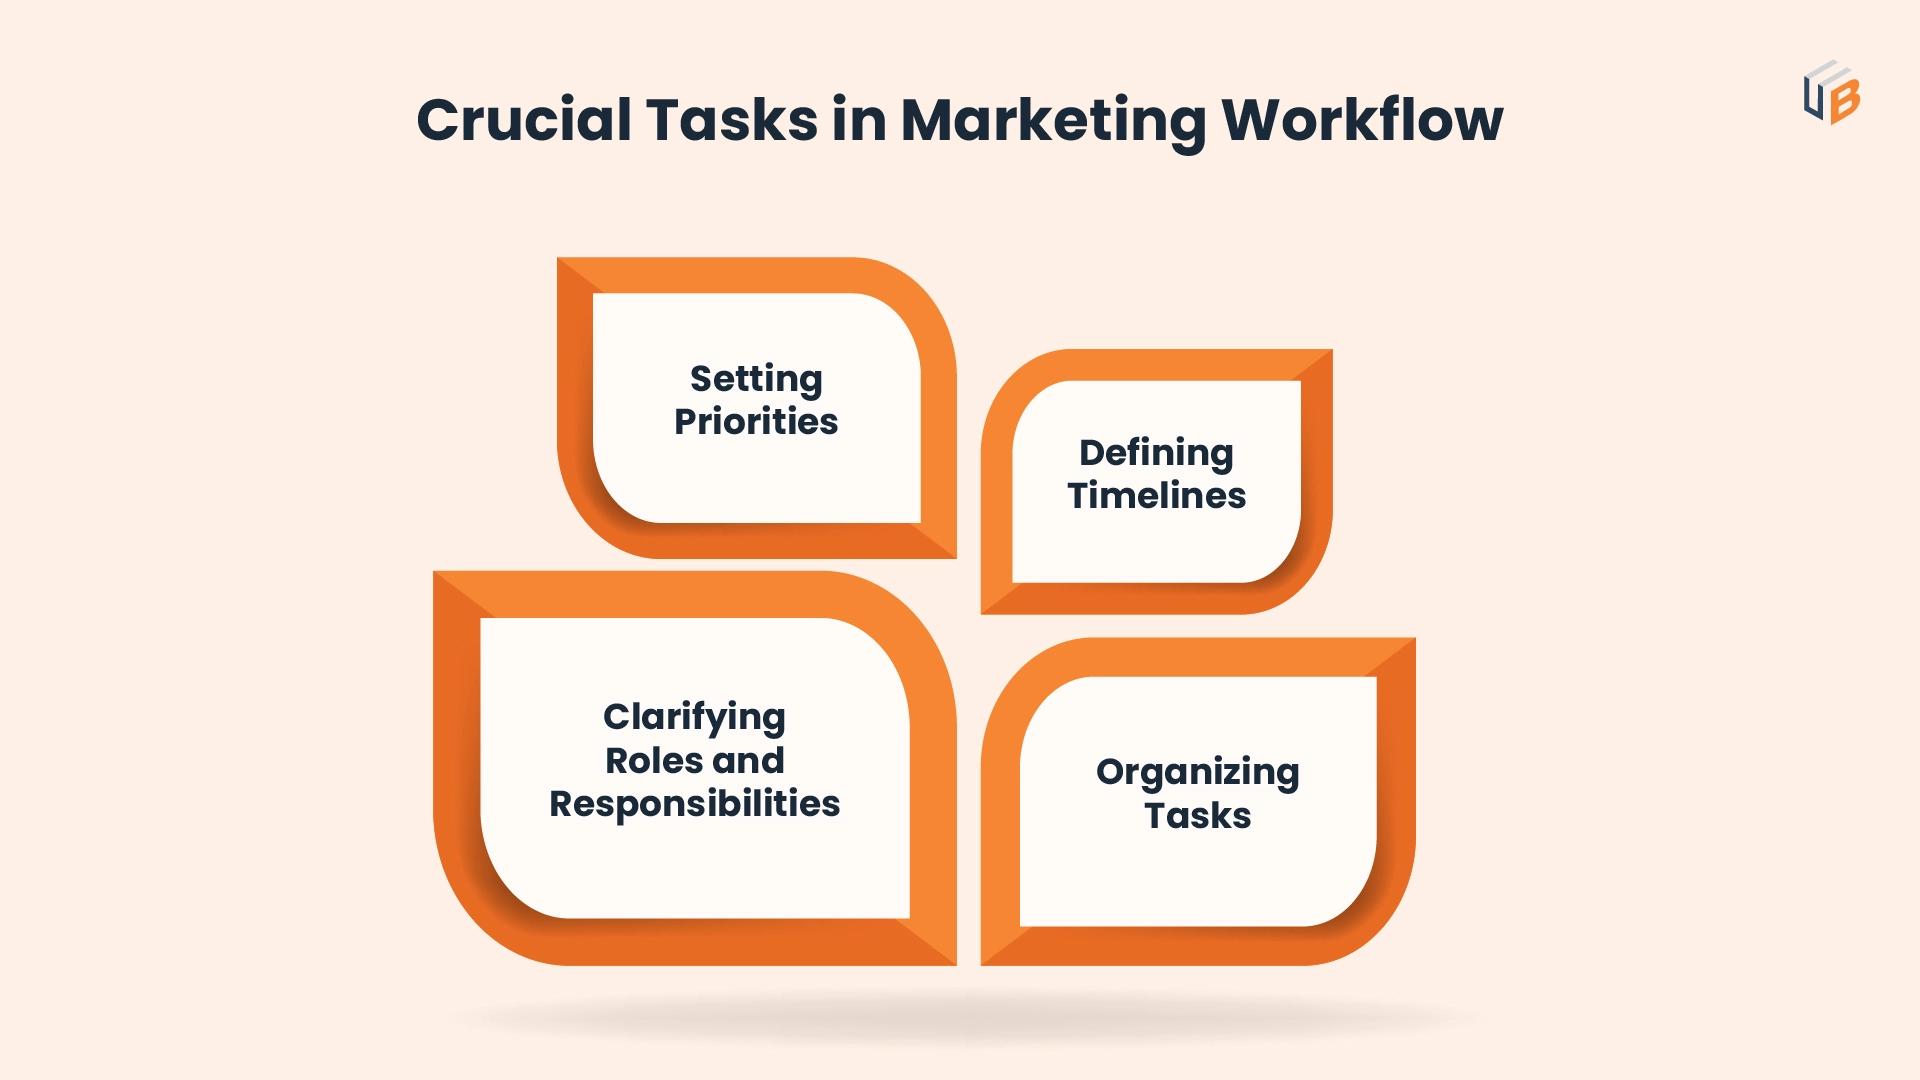 Streamline Marketing Workflows in 5 Quick Steps